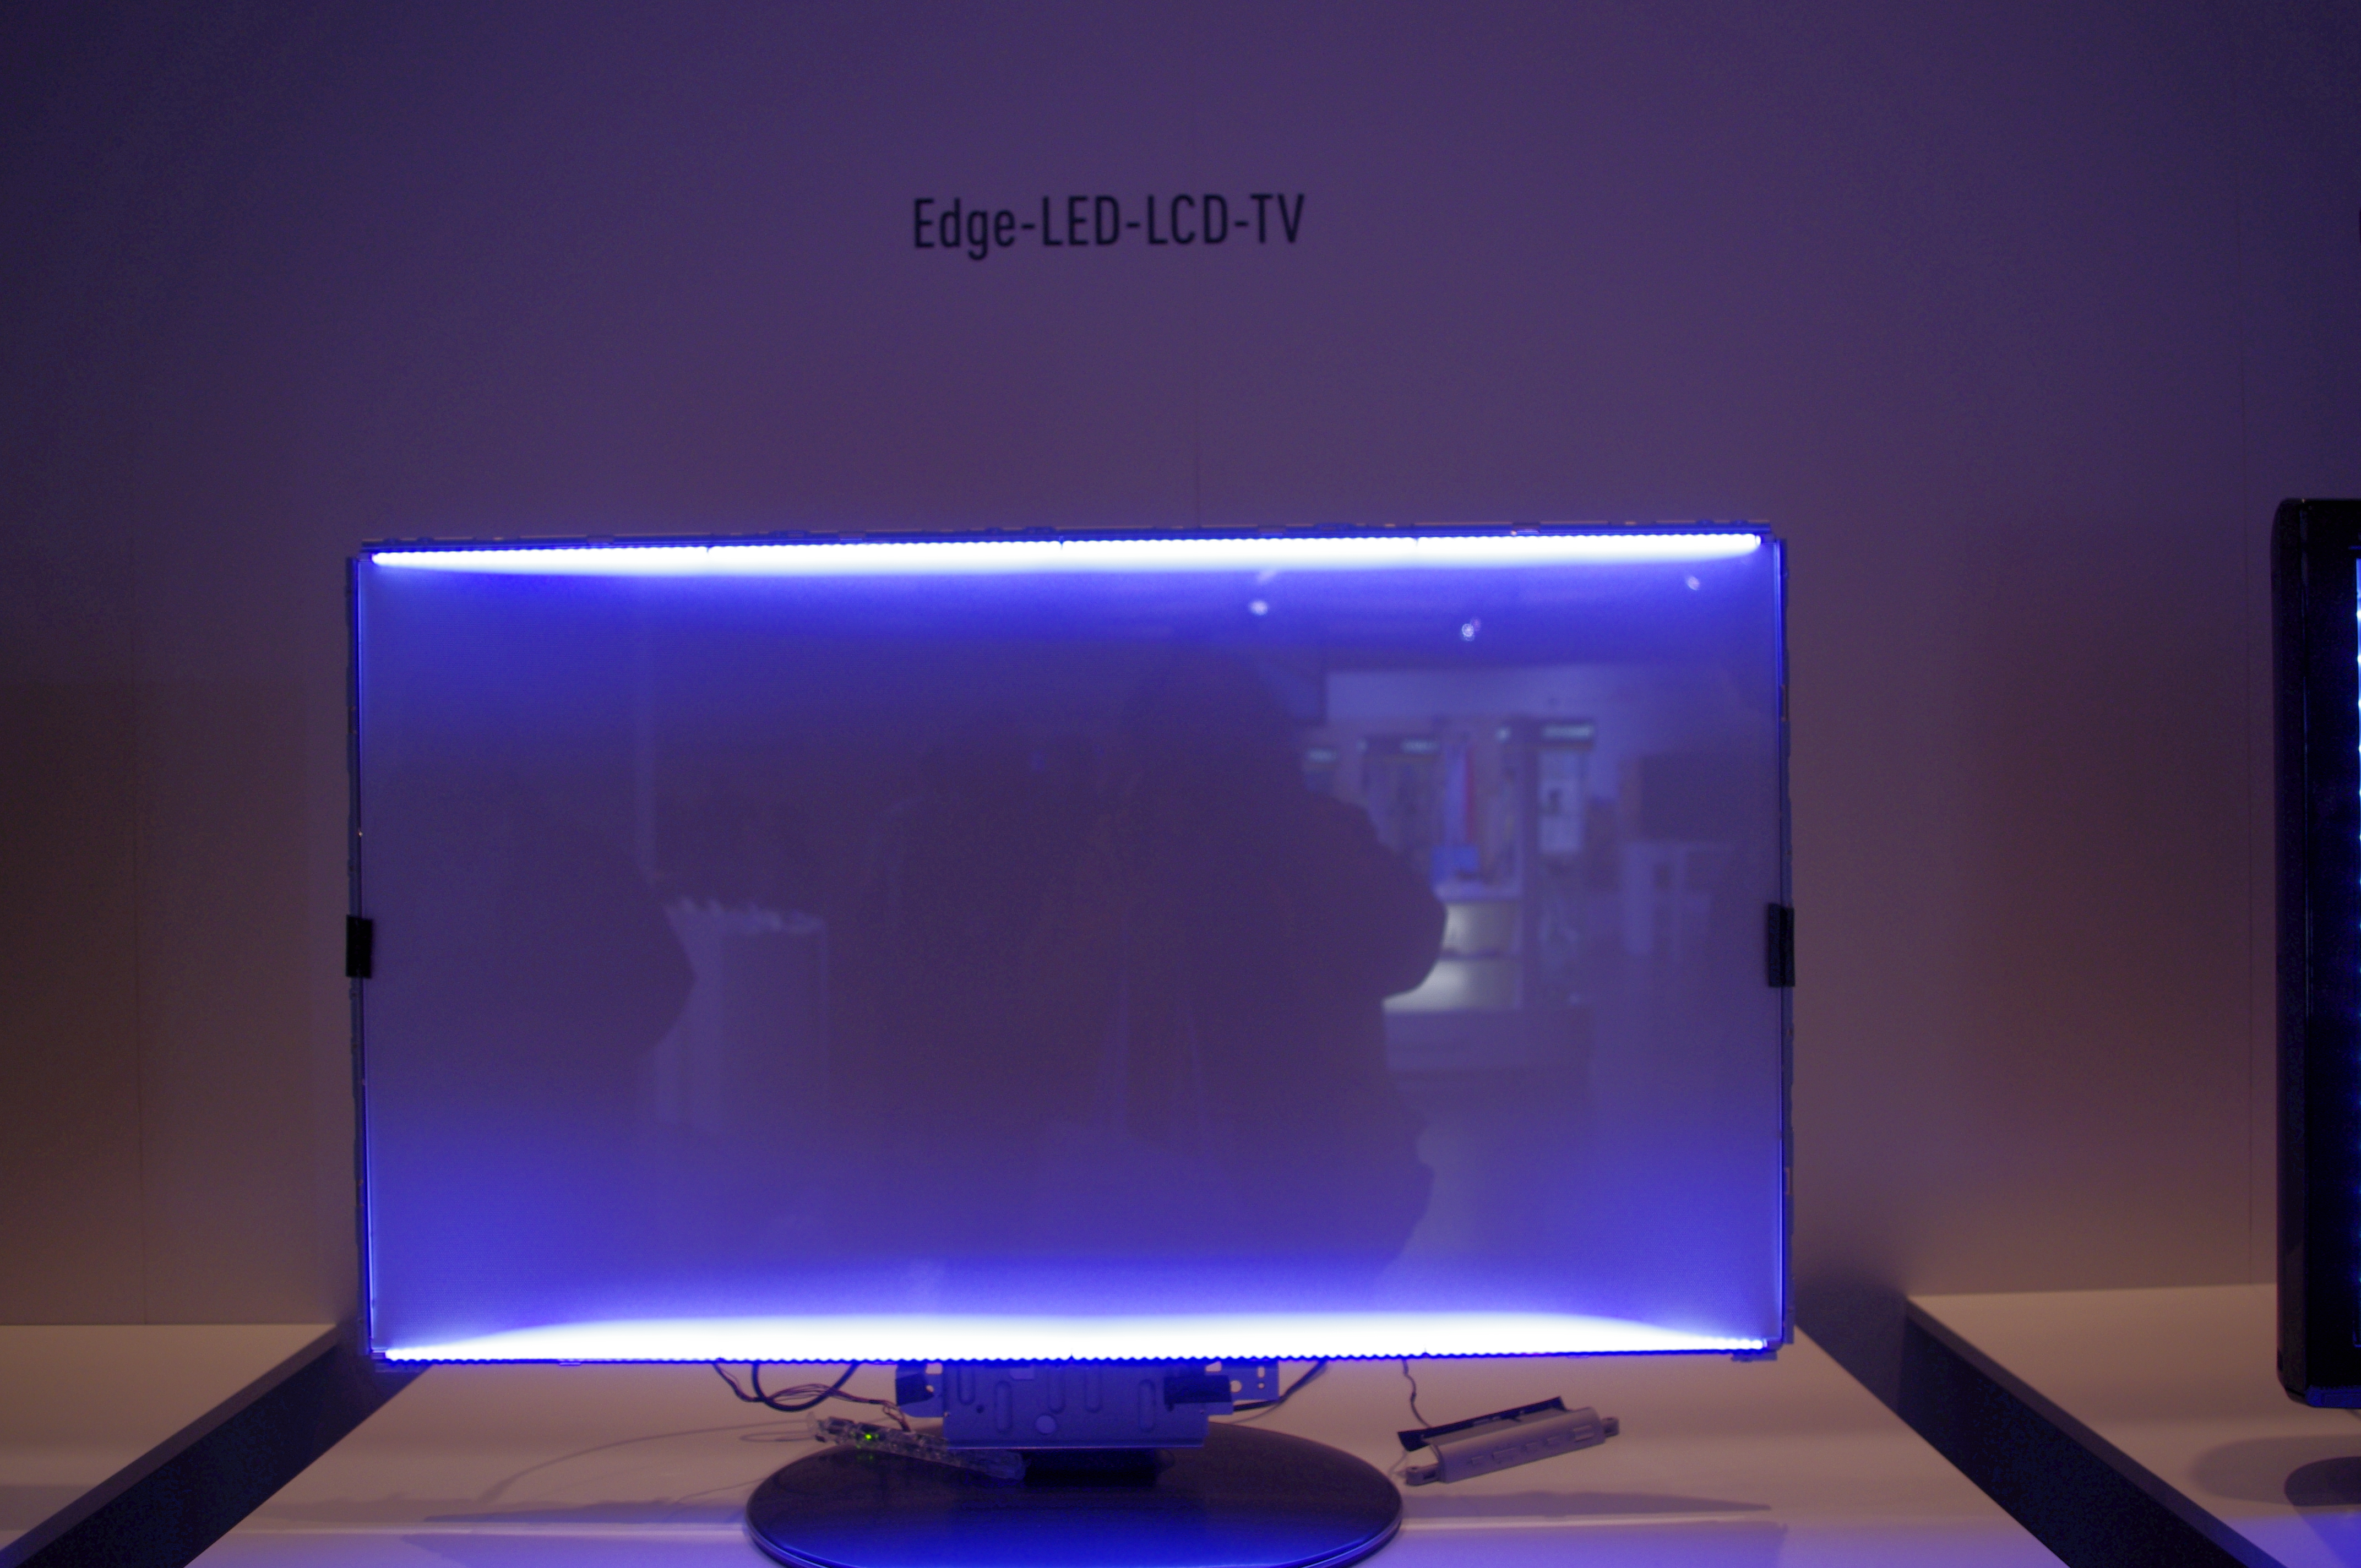 Изменился свет экрана. Edge led подсветка Samsung. Подсветка Edge led что это такое в телевизоре. Тип светодиодной подсветки: Edge led. Подсветка direct led что это такое в телевизоре.